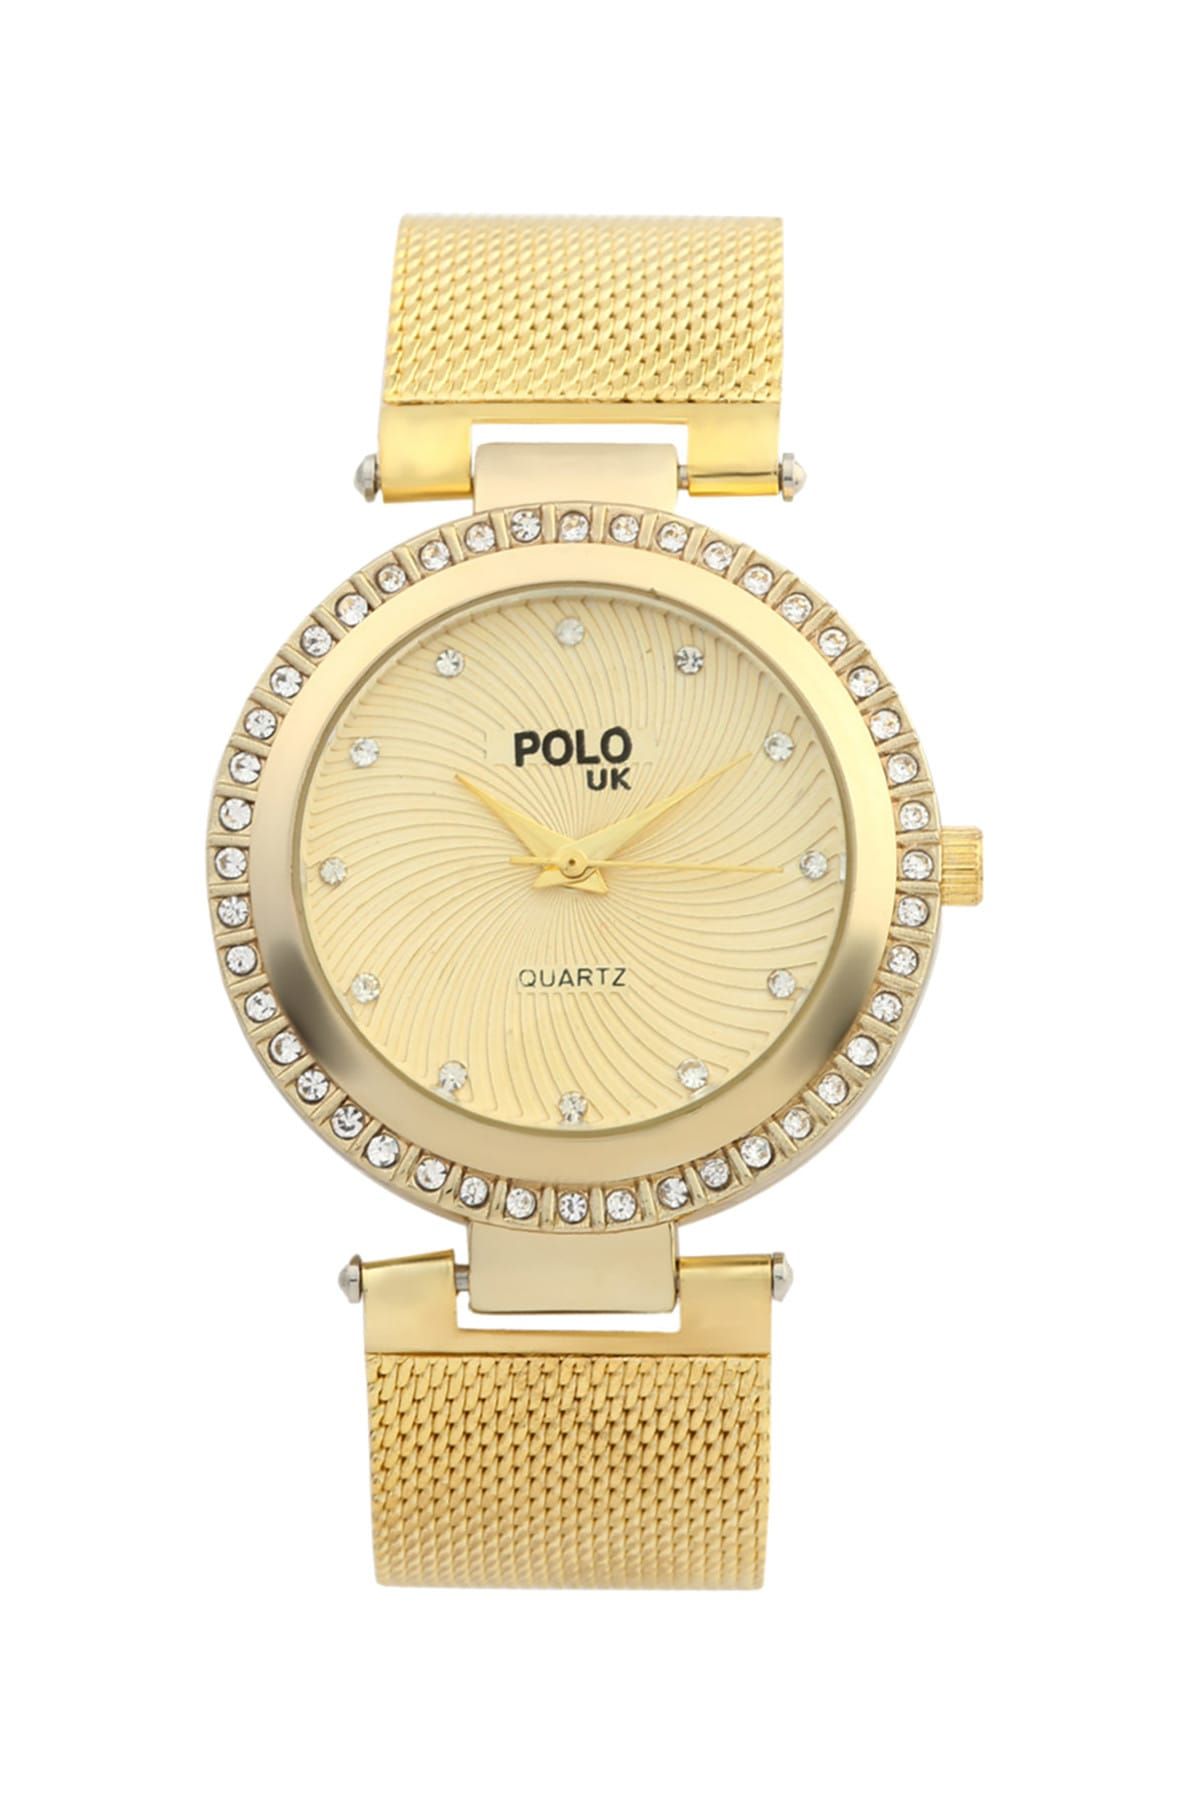 Polo U.K. Kadın Kol Saati POLOUK 5017